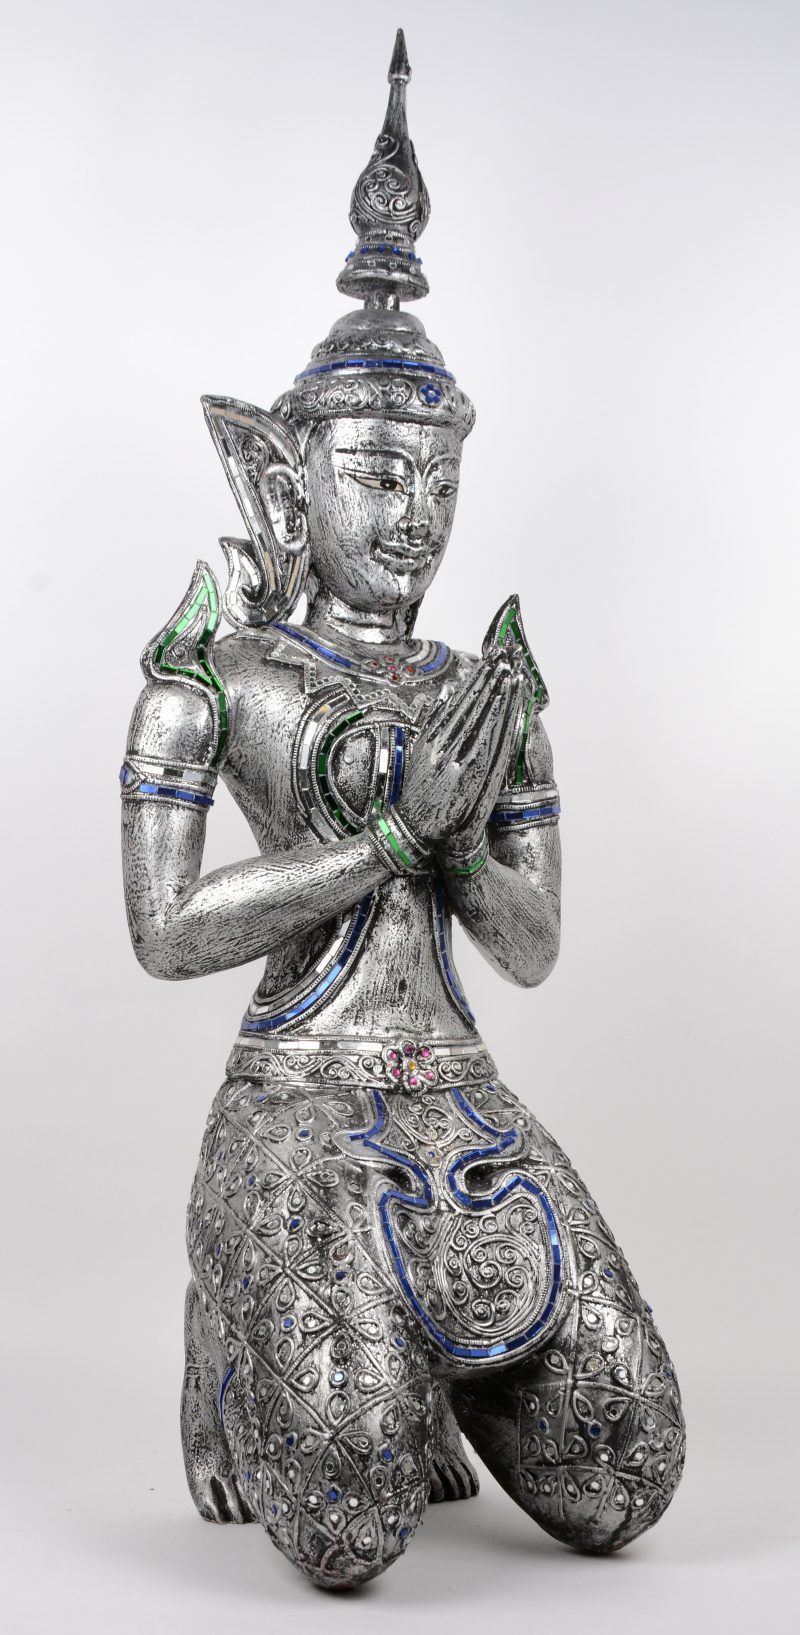 Een knielende Thaise Boeddha van zilvergepatineerd hout, versierd met glazen plaatjes in groen, rood en blauw.